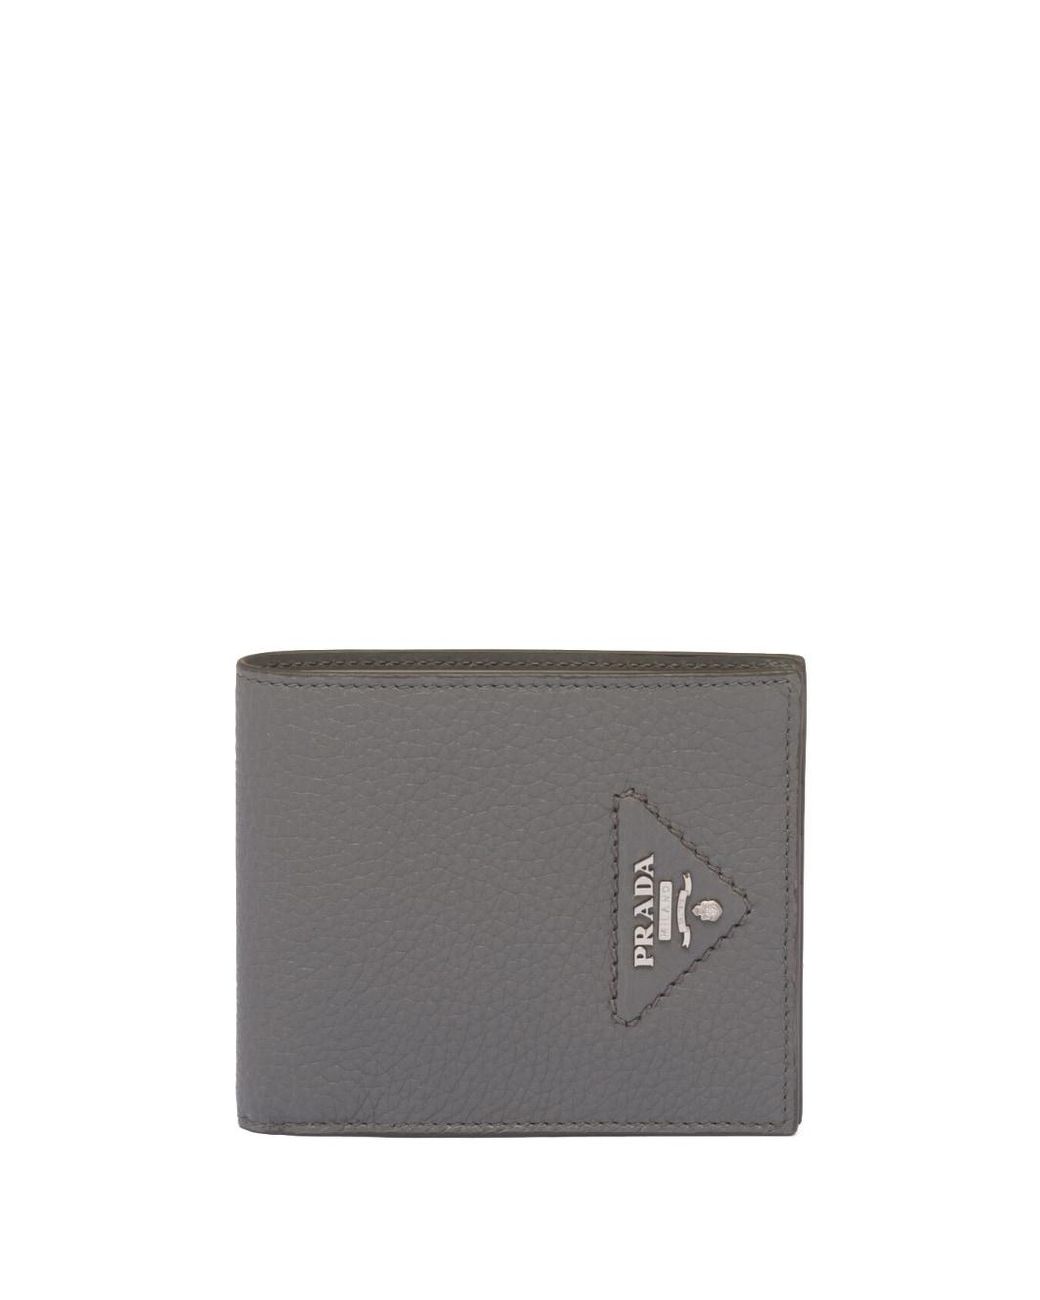 Prada Pebbled-texture Logo-plaque Wallet in Grey for Men | Lyst UK